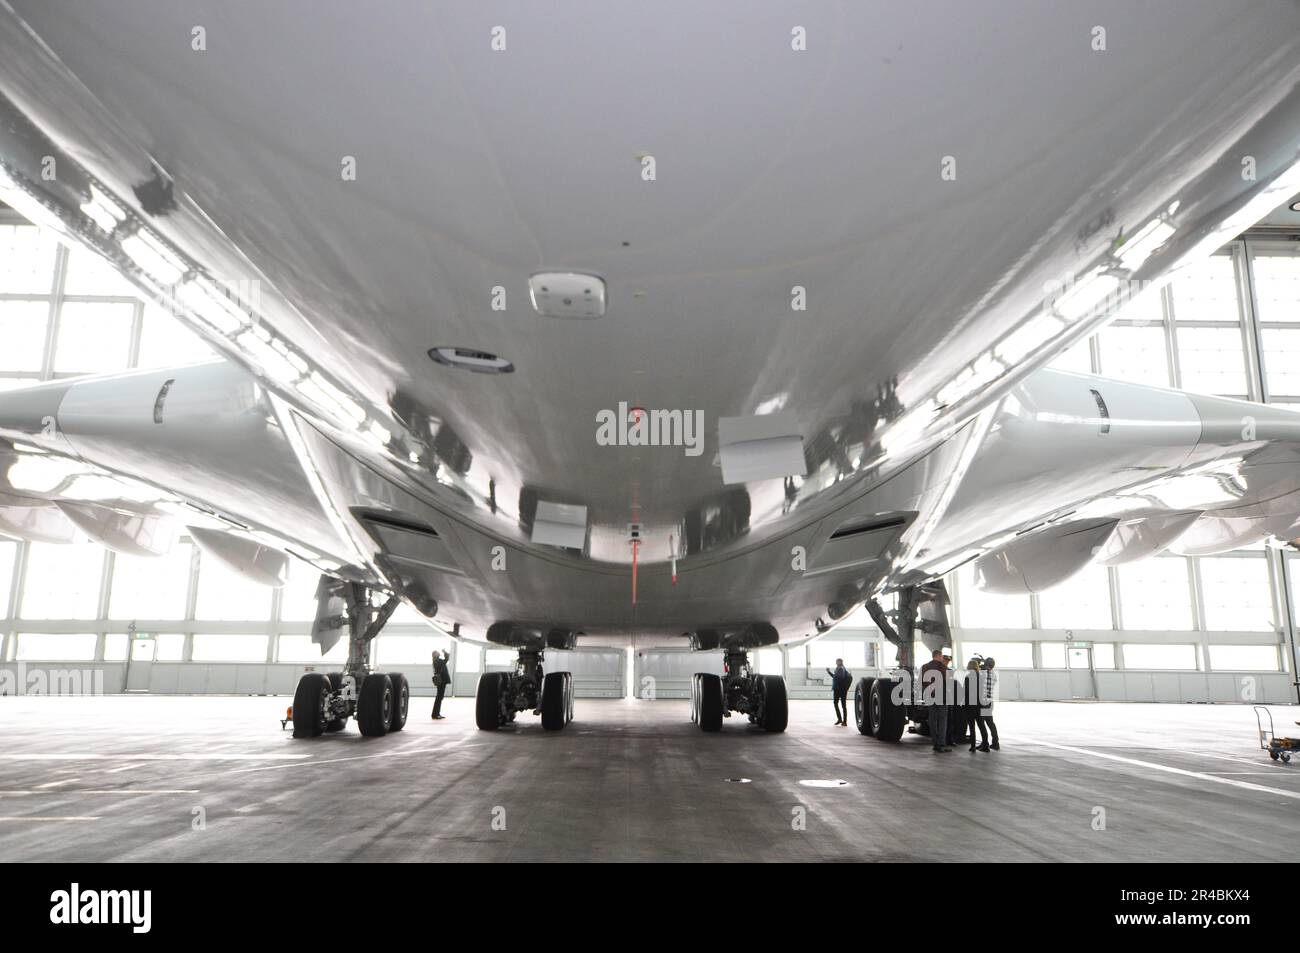 Aviation, aéroport, Munich, avion, Airbus, A380. Fuselage, train d'atterrissage Banque D'Images